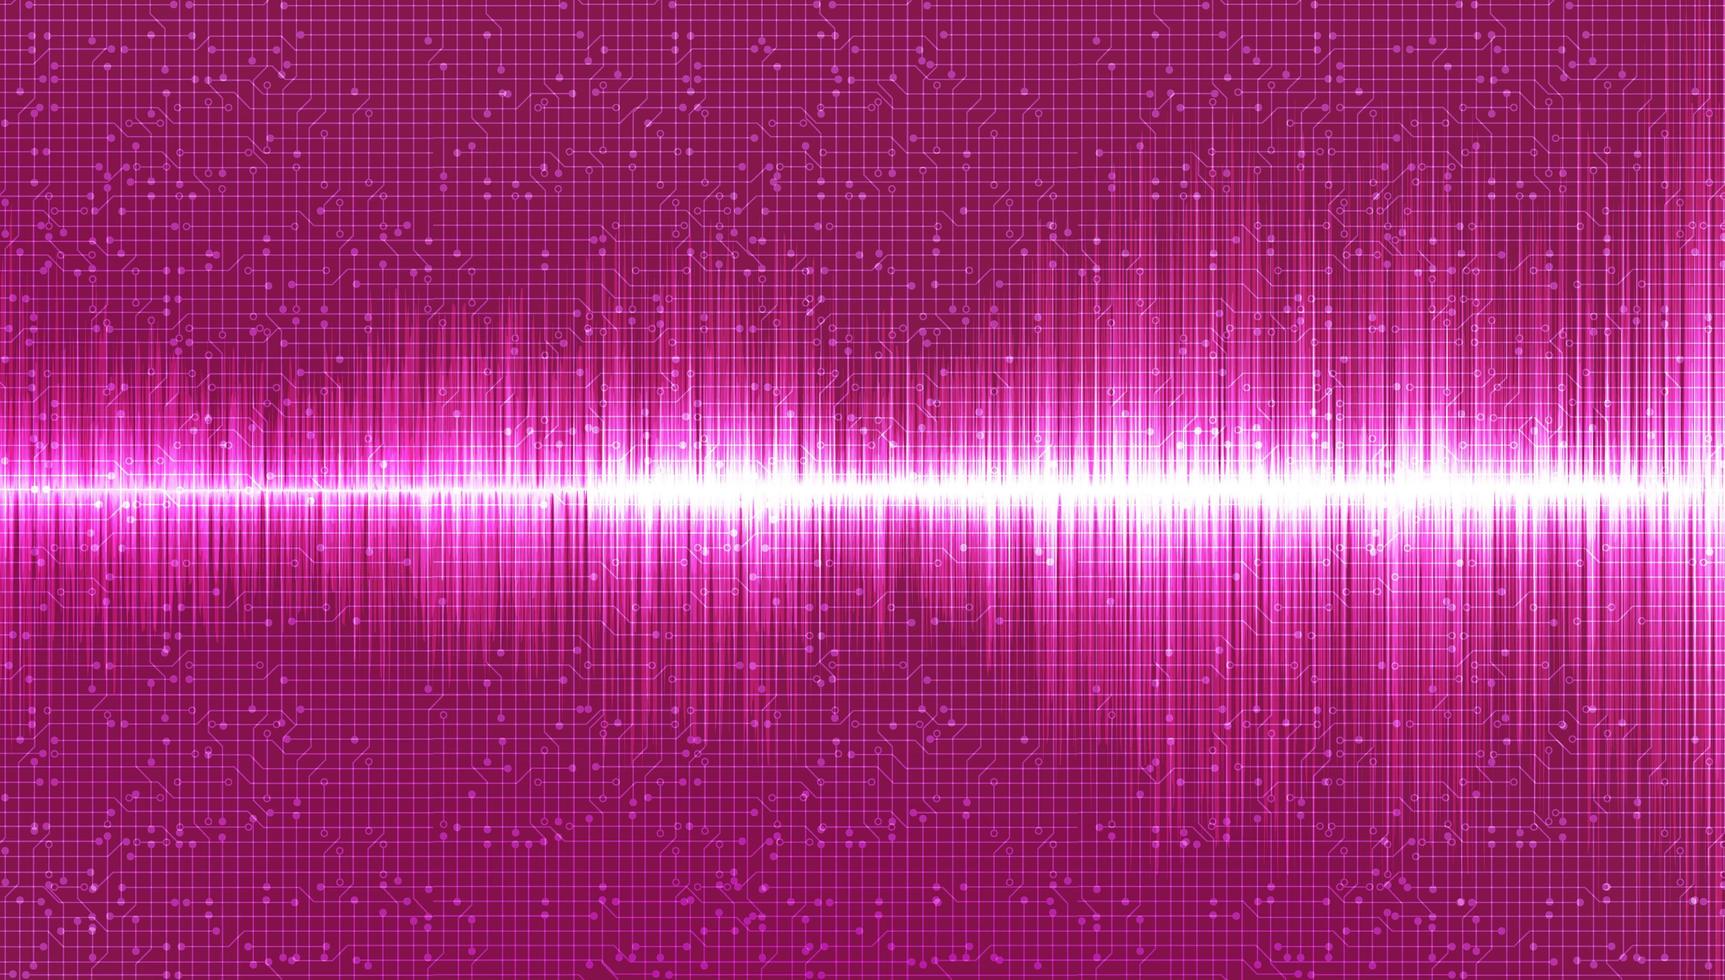 Hãy khám phá âm thanh kỹ thuật số đầy sắc màu với hồng nổi bật. Được trau chuốt bằng công nghệ hiện đại, âm thanh sẽ đưa bạn vào một trải nghiệm nghe nhạc tuyệt vời như chưa từng có.